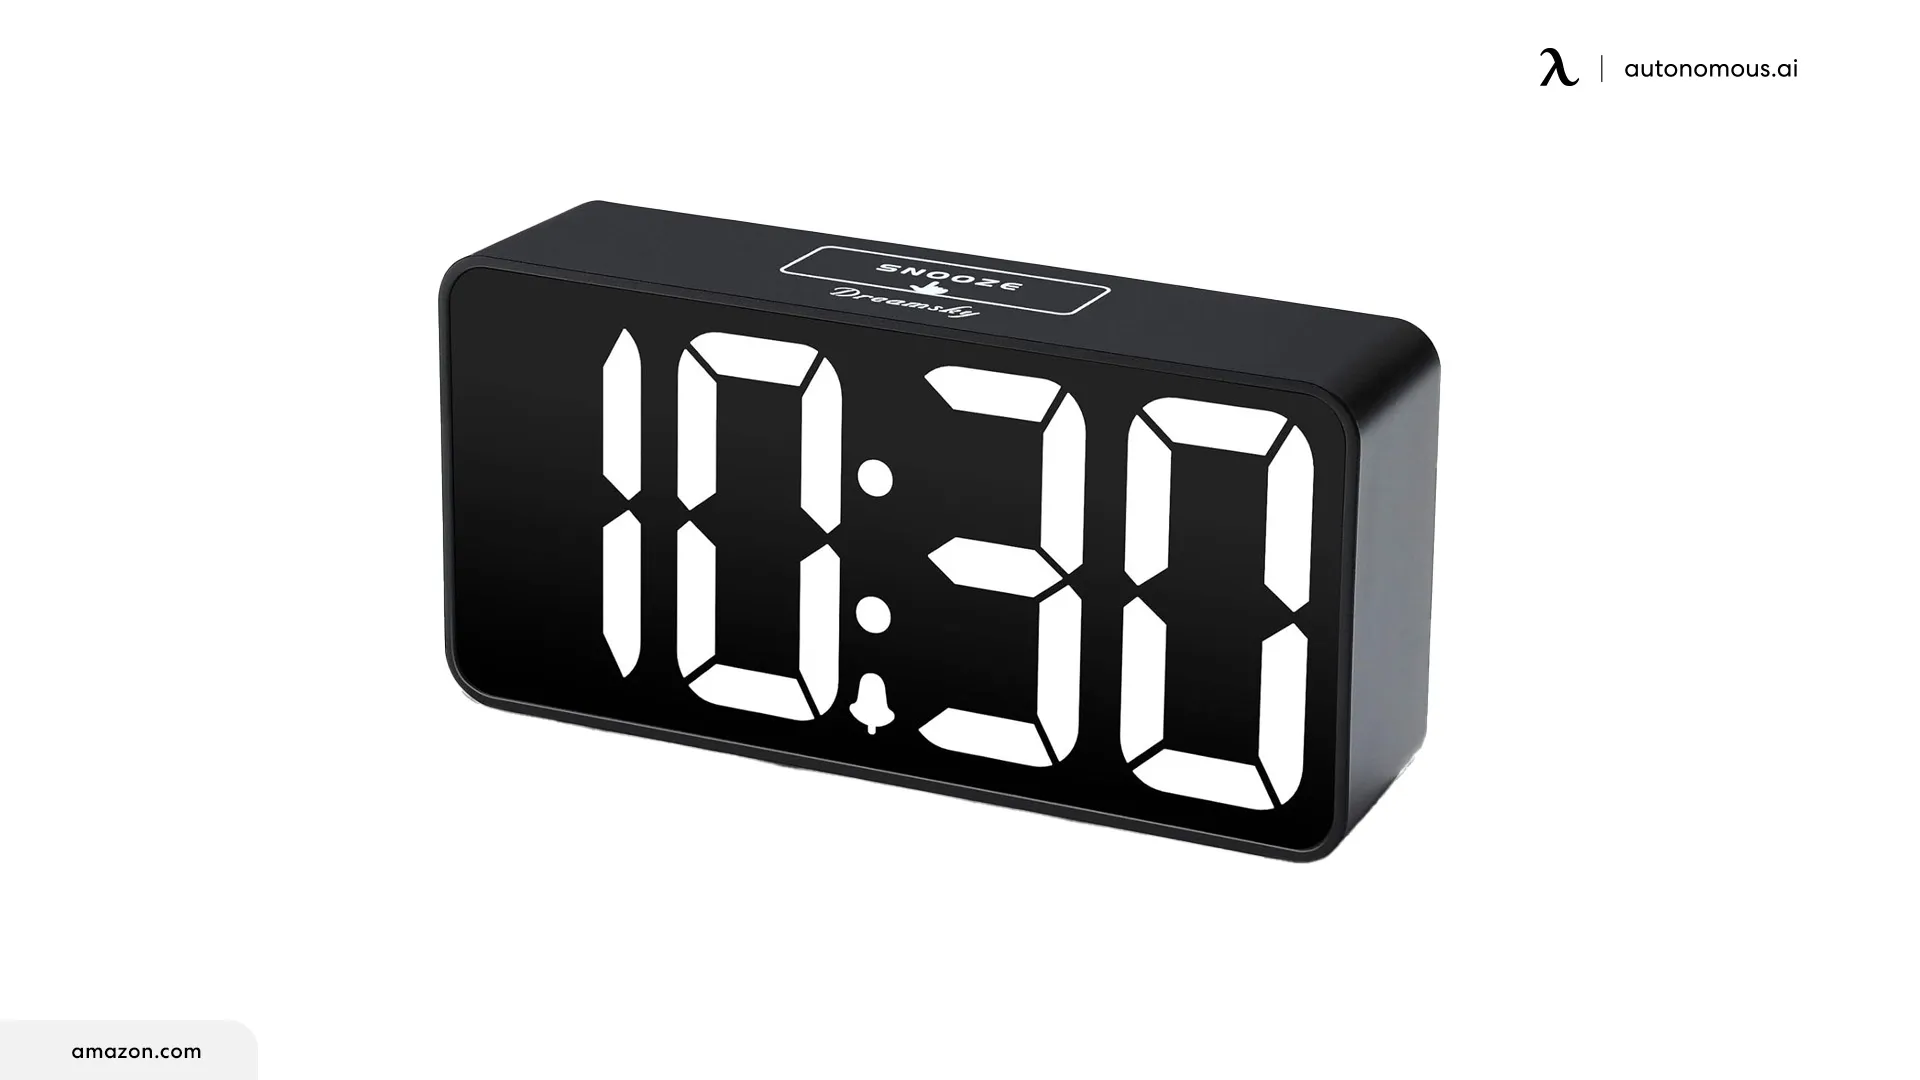 DreamSky Compact Digital Alarm Clock